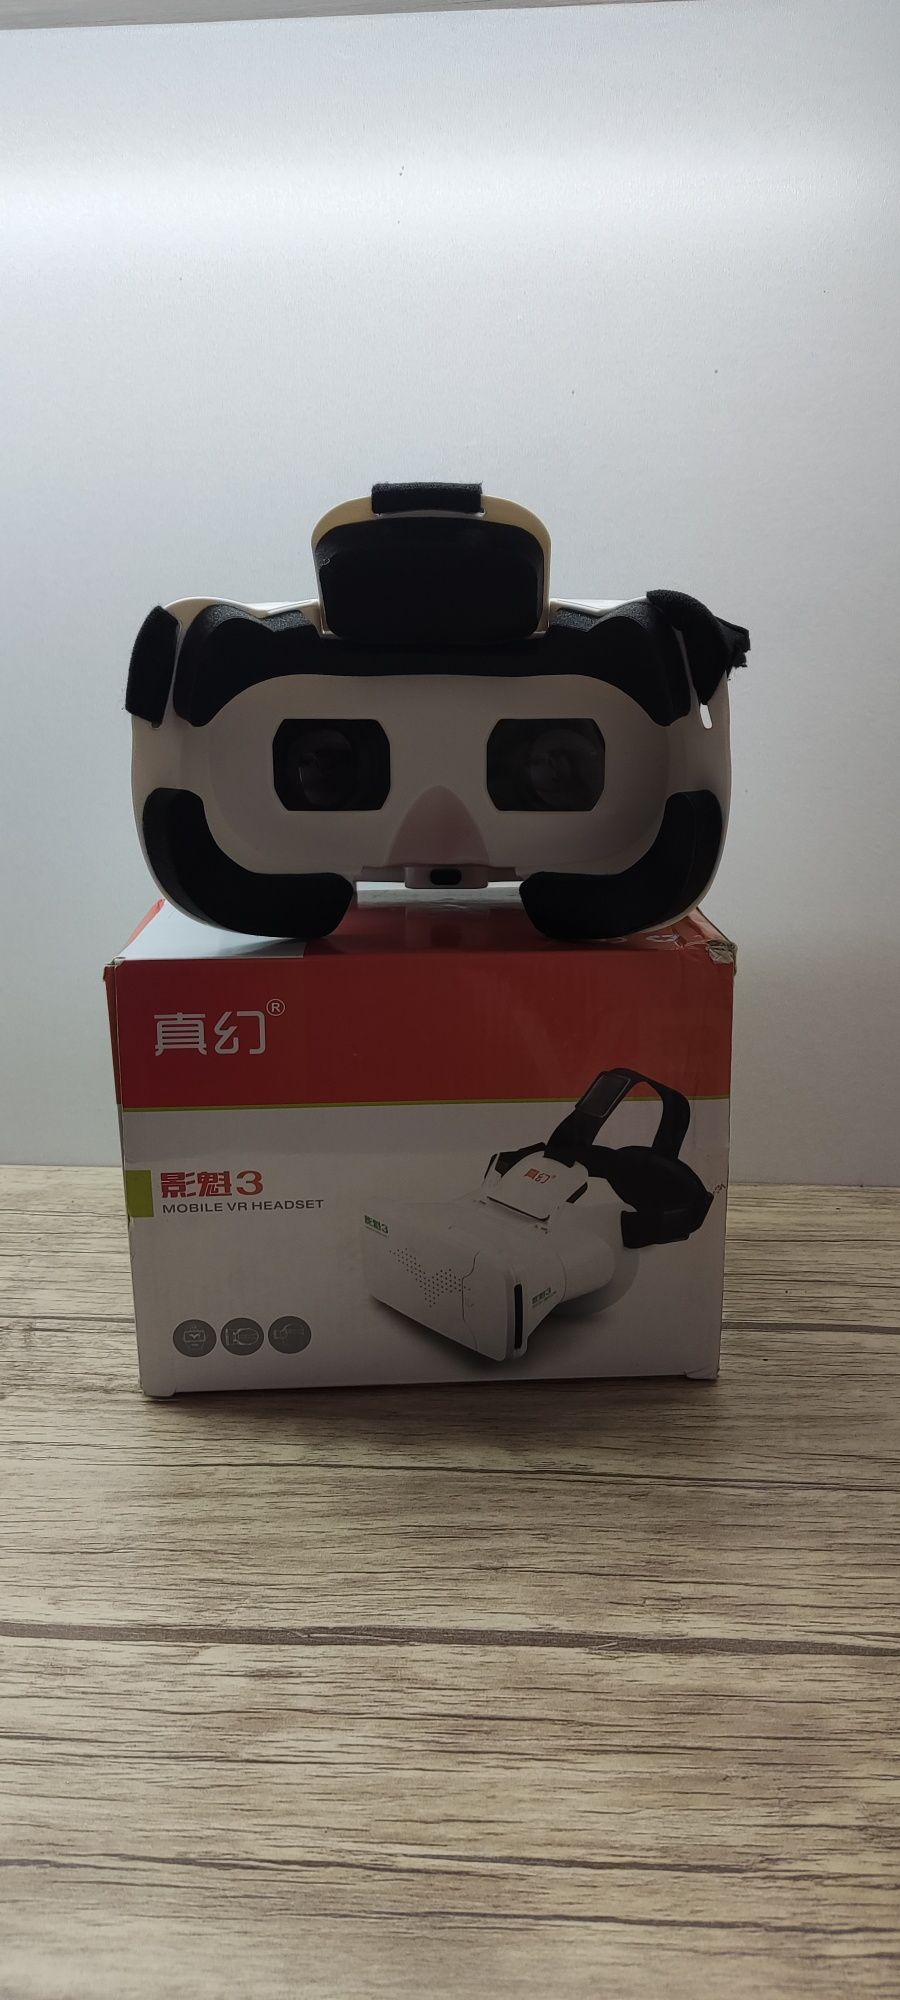 Продается очки виртуальной реальности VR BOX